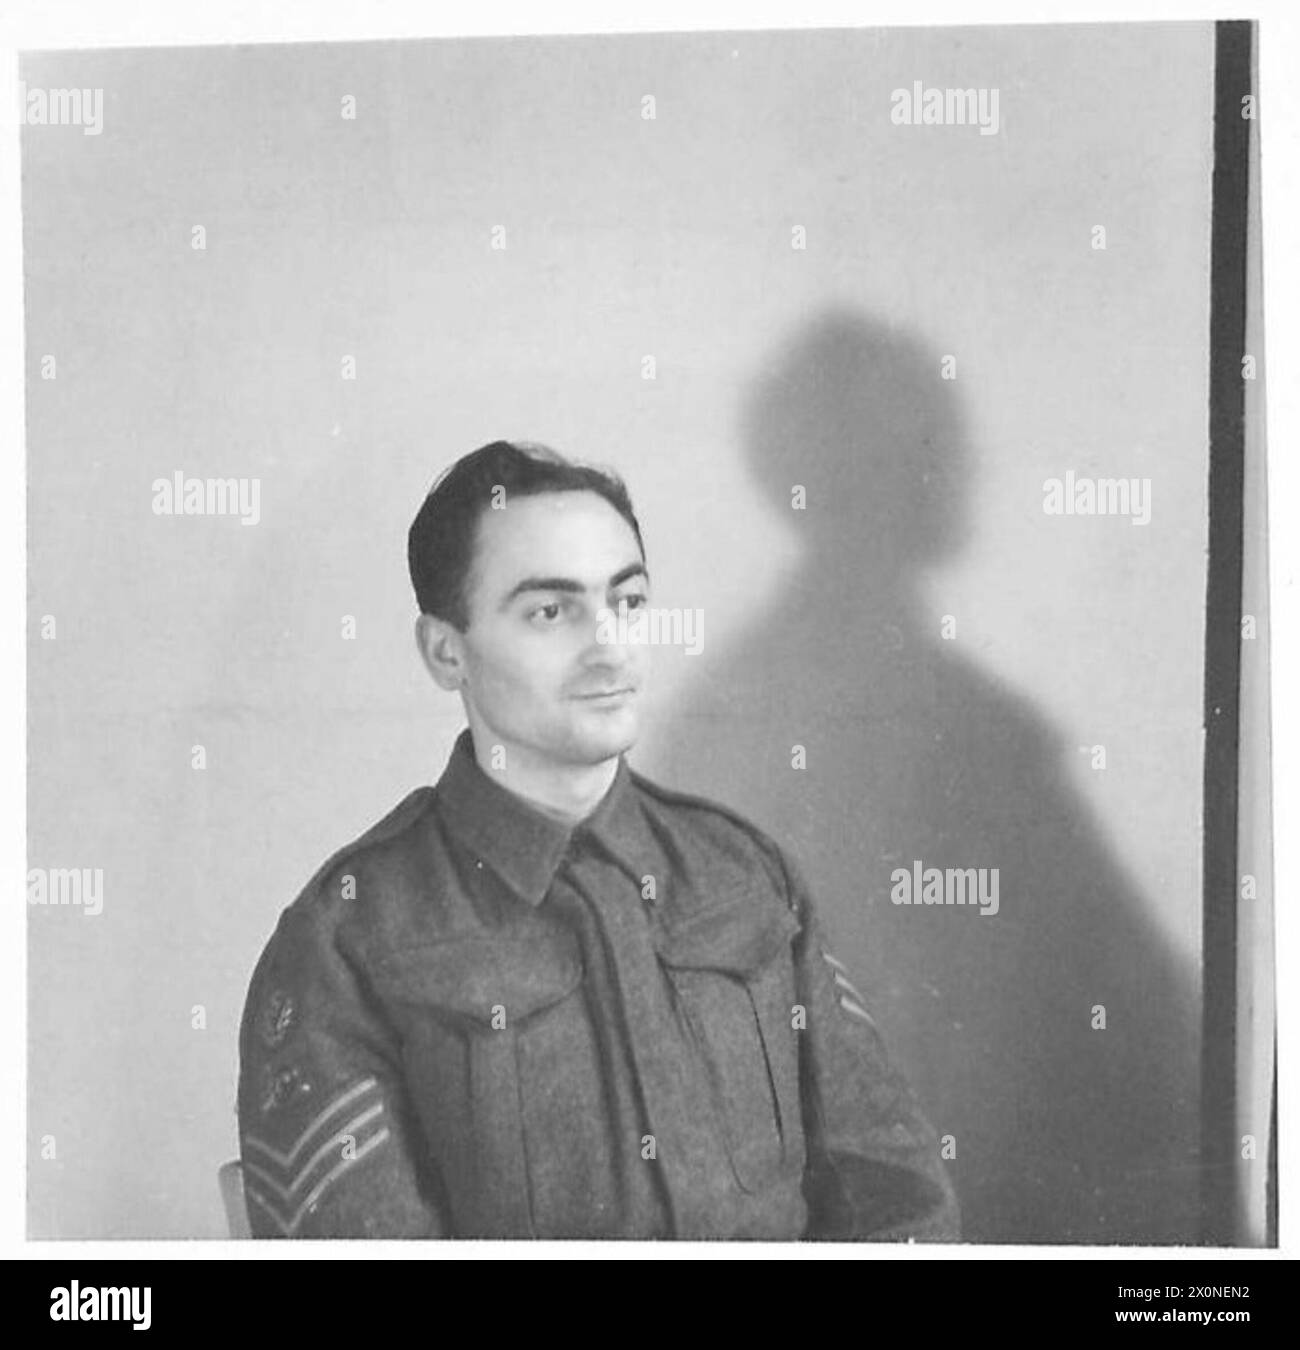 CAMERAMEN NCO PER M.E. - Sgt. Berman, cameraman NCO per M.E. Photographic negative, British Army Foto Stock